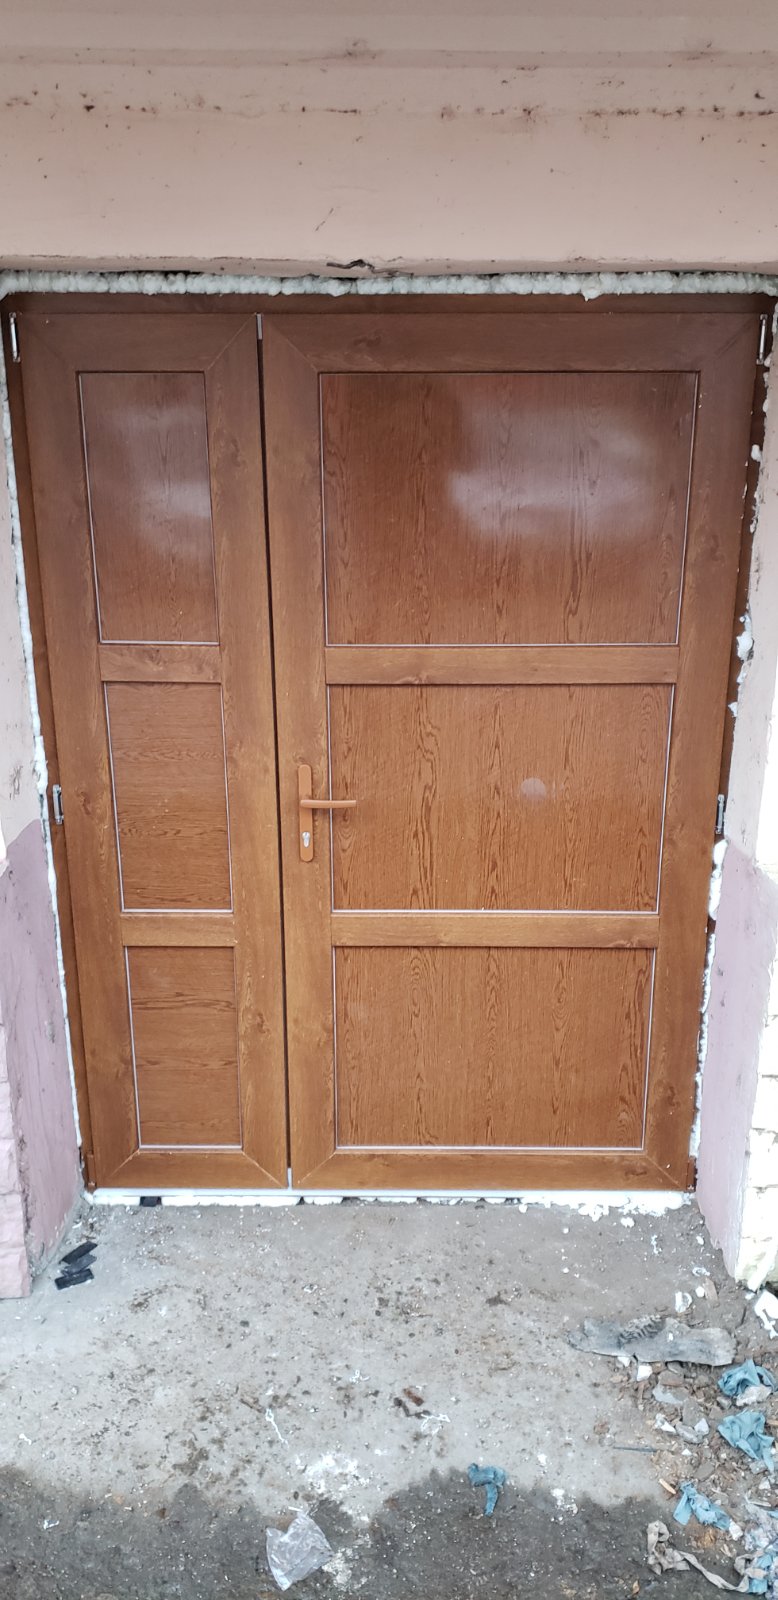 Окна и двери из ПВХ в Каменке — дешевле не найдёте